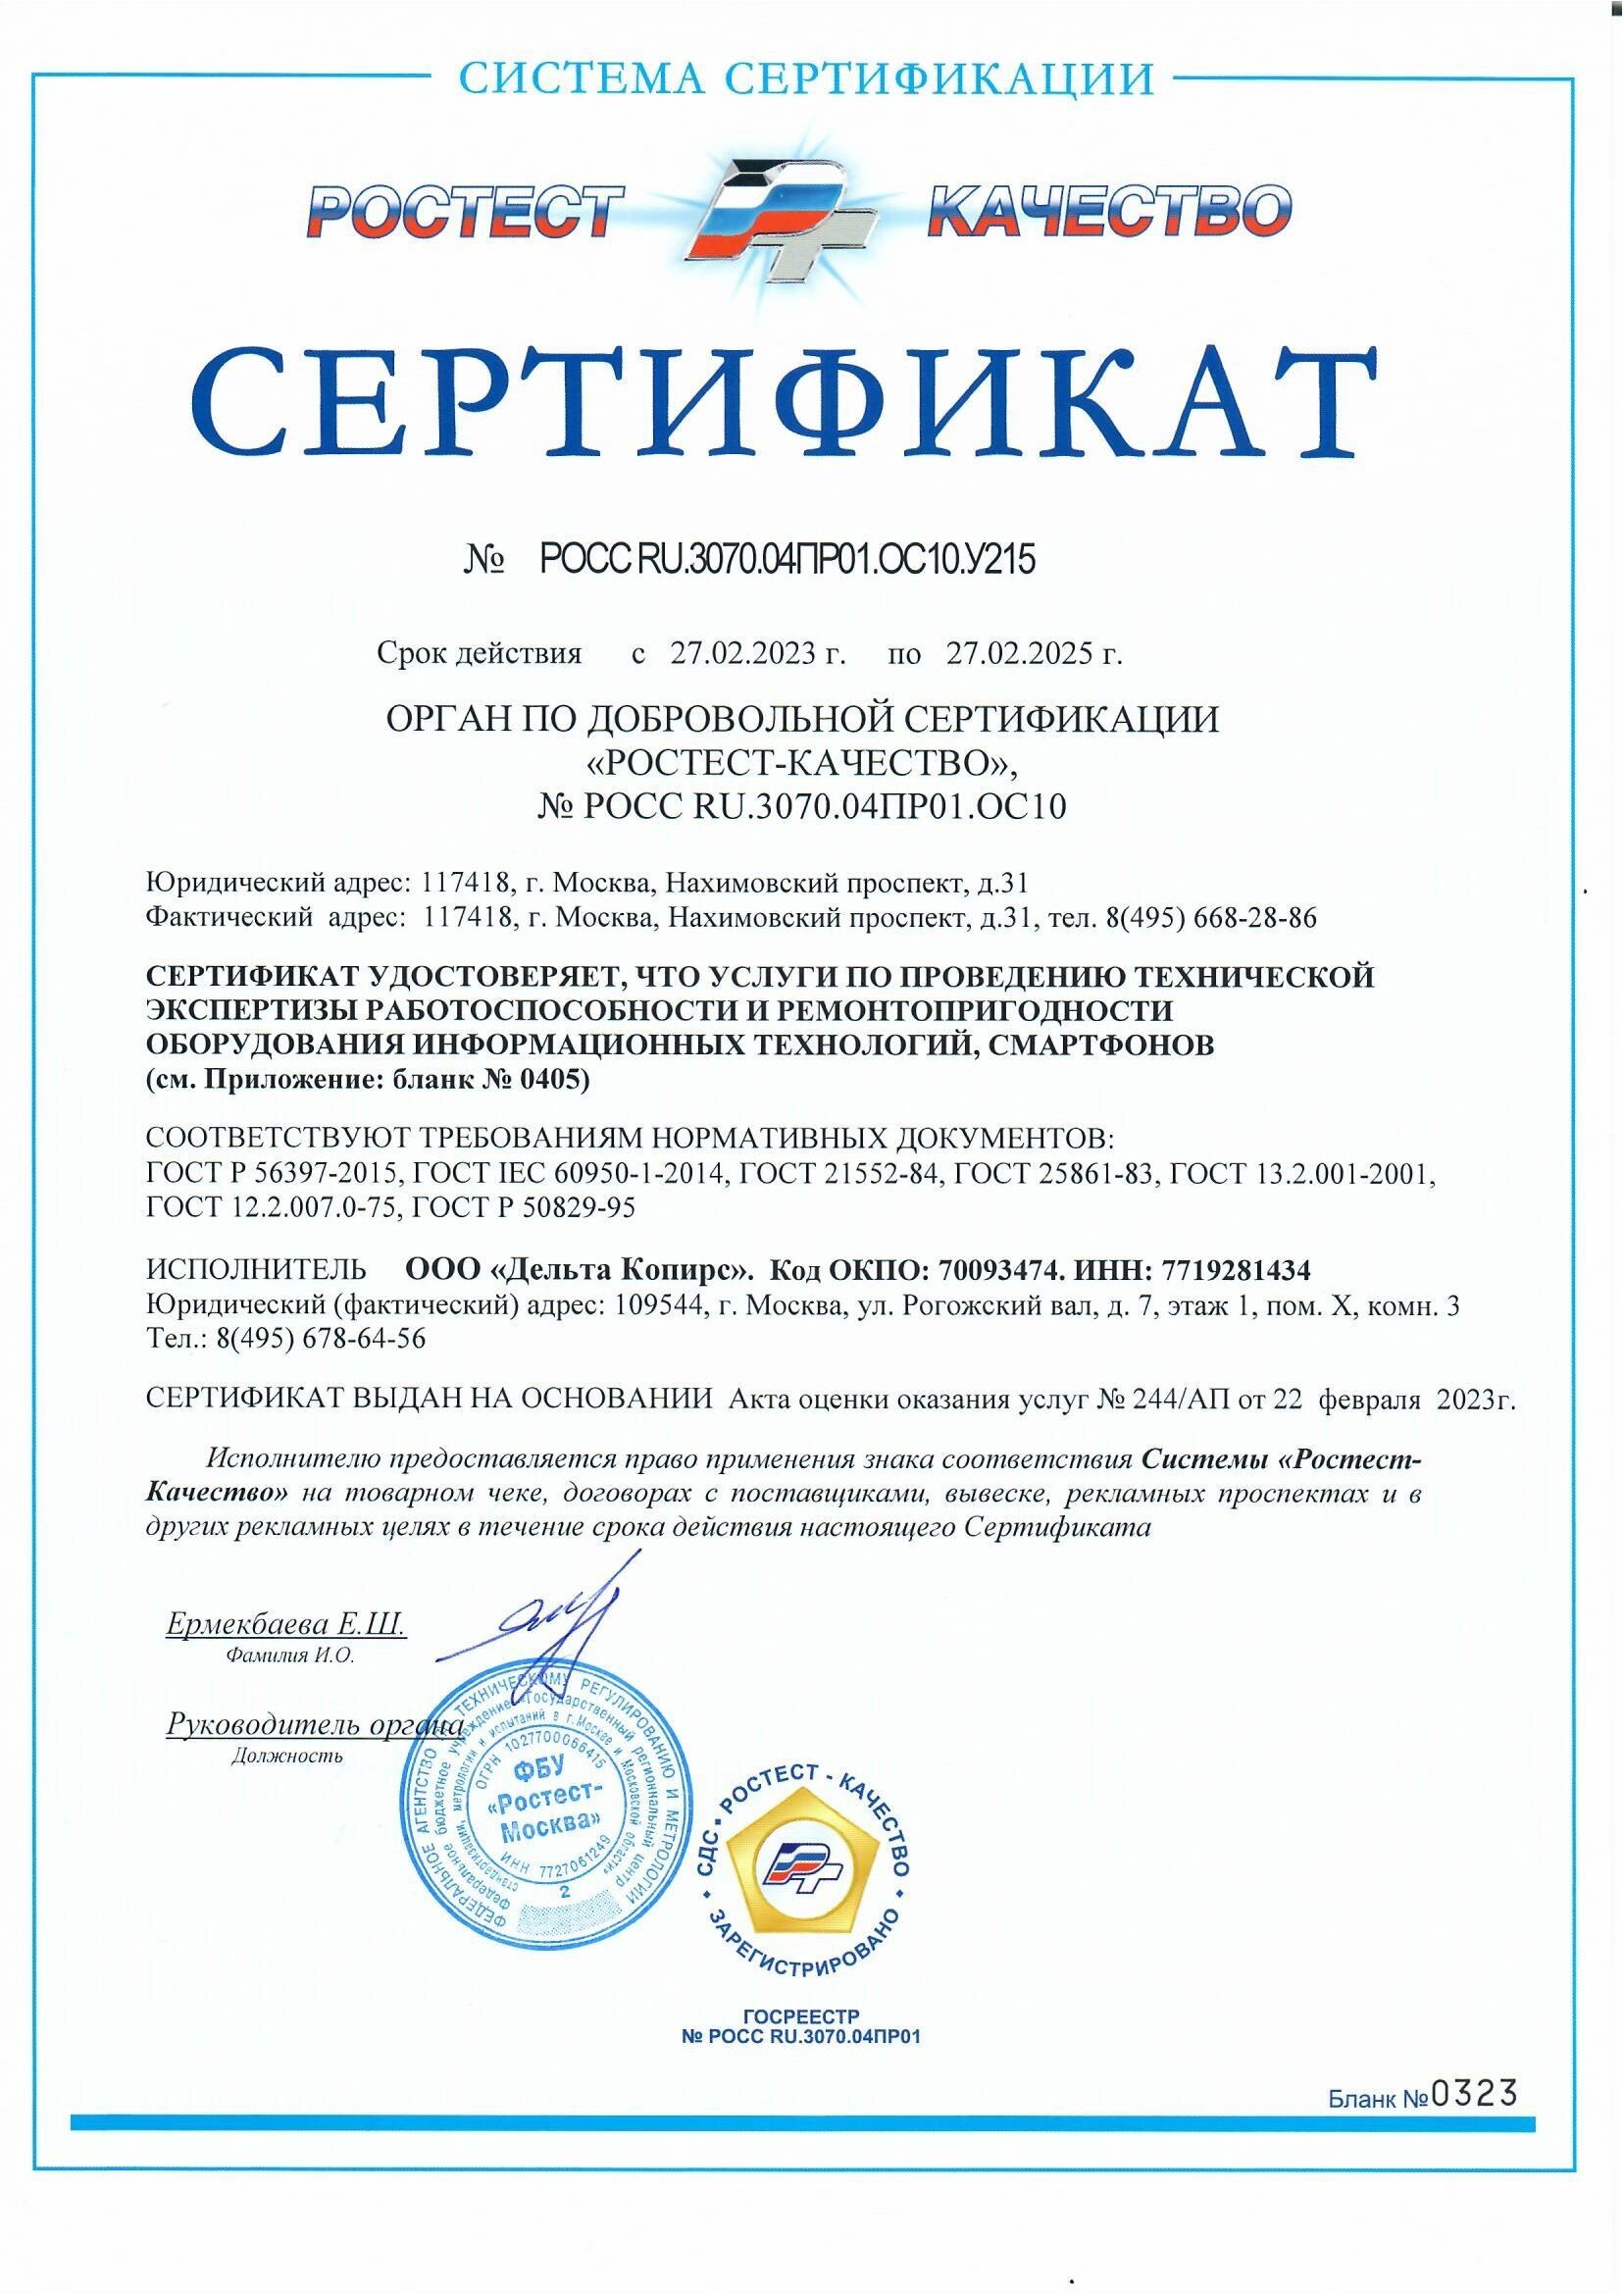 сертификаты дельта копирс (5)